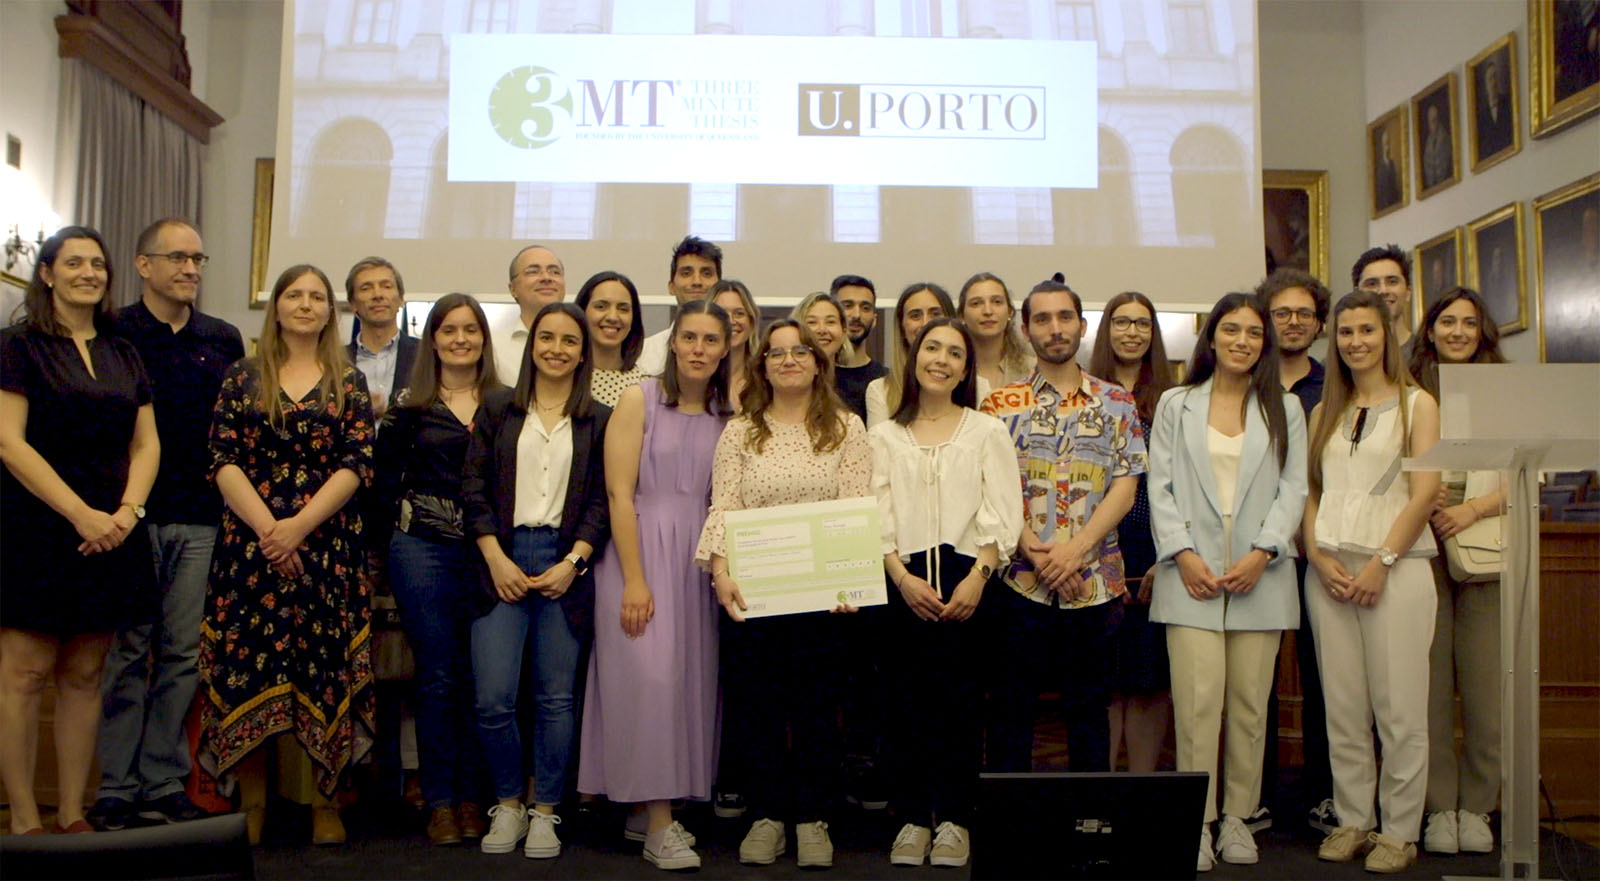 Estudante da FCUP vence primeira edição do 3MT U.Porto